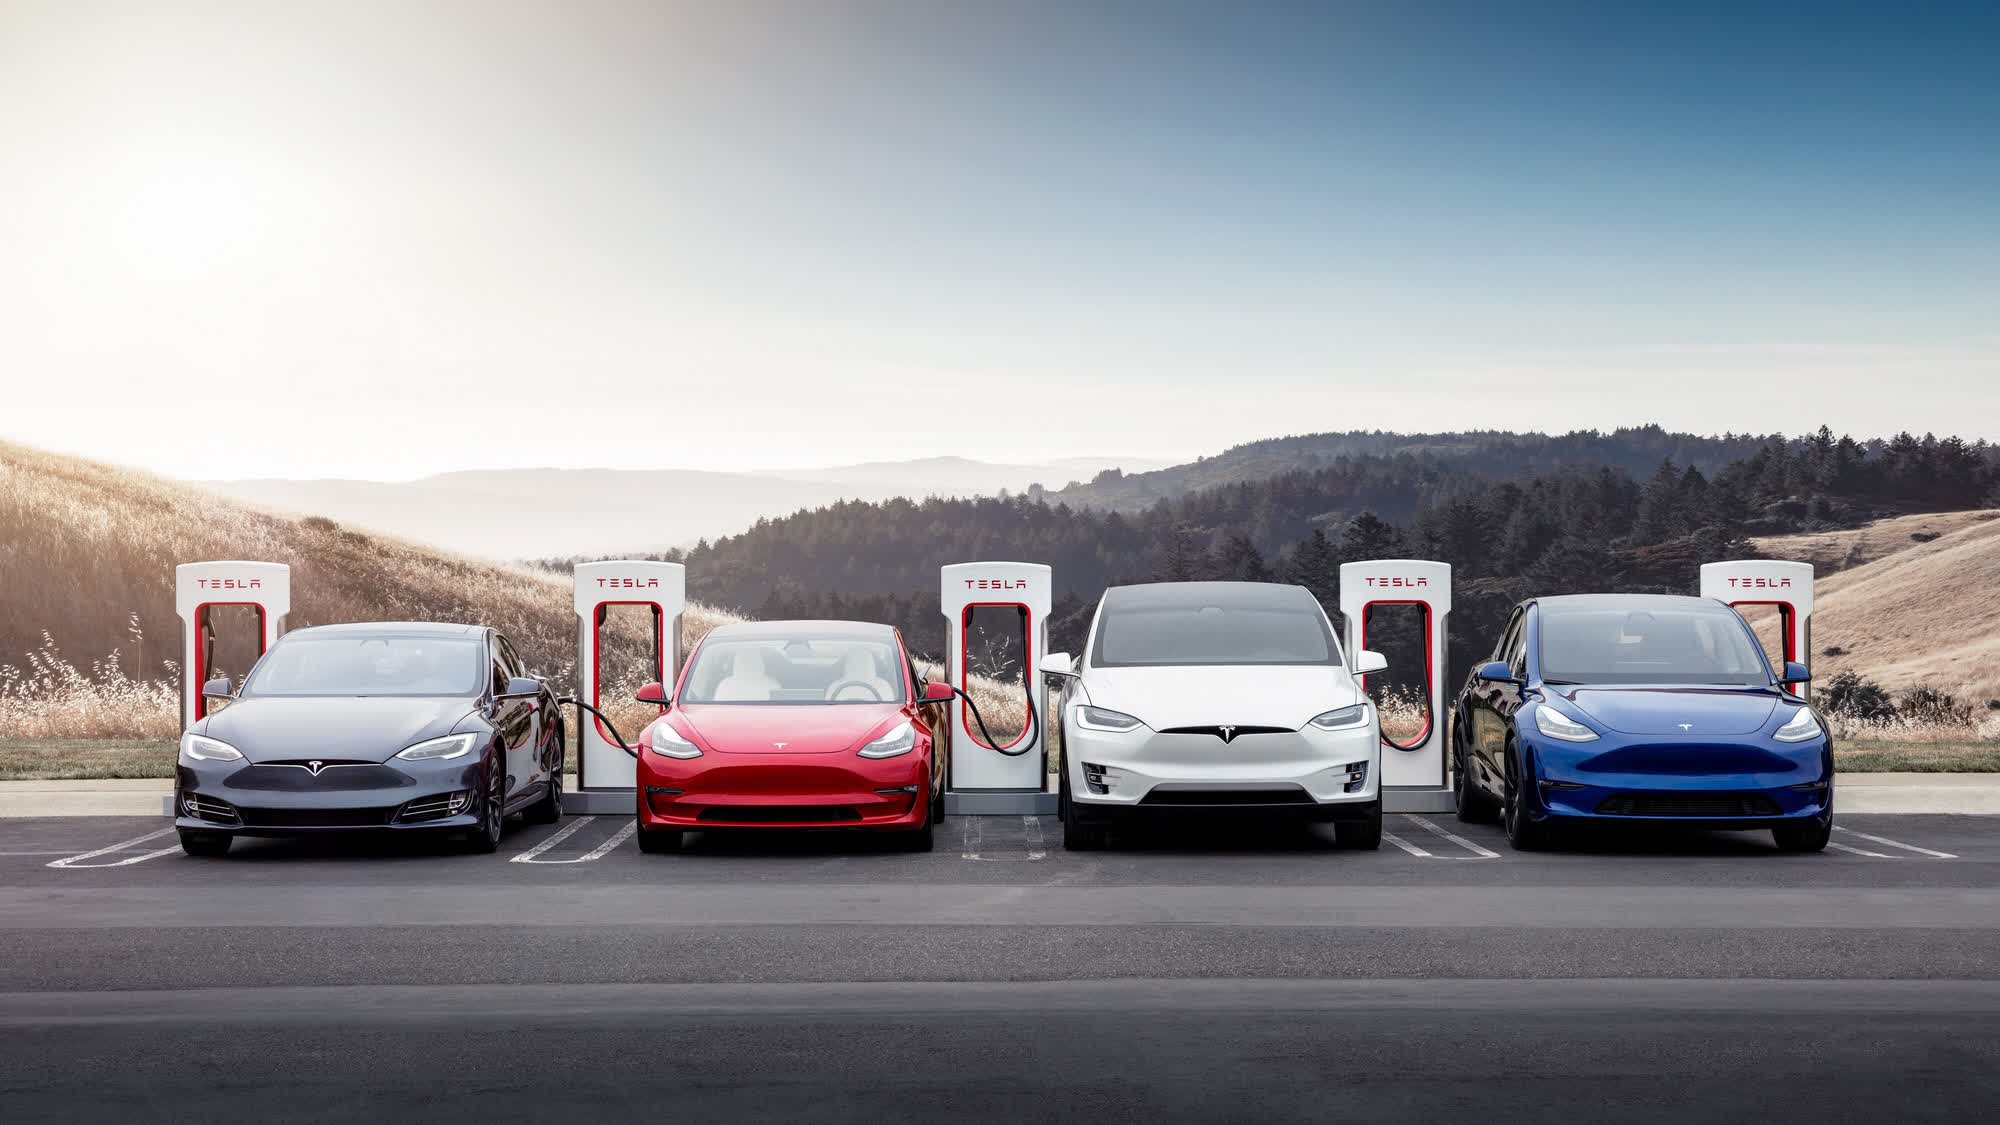 Tesla despide equipos completos de Supercharger y vehículos nuevos, semanas después de recortes anteriores